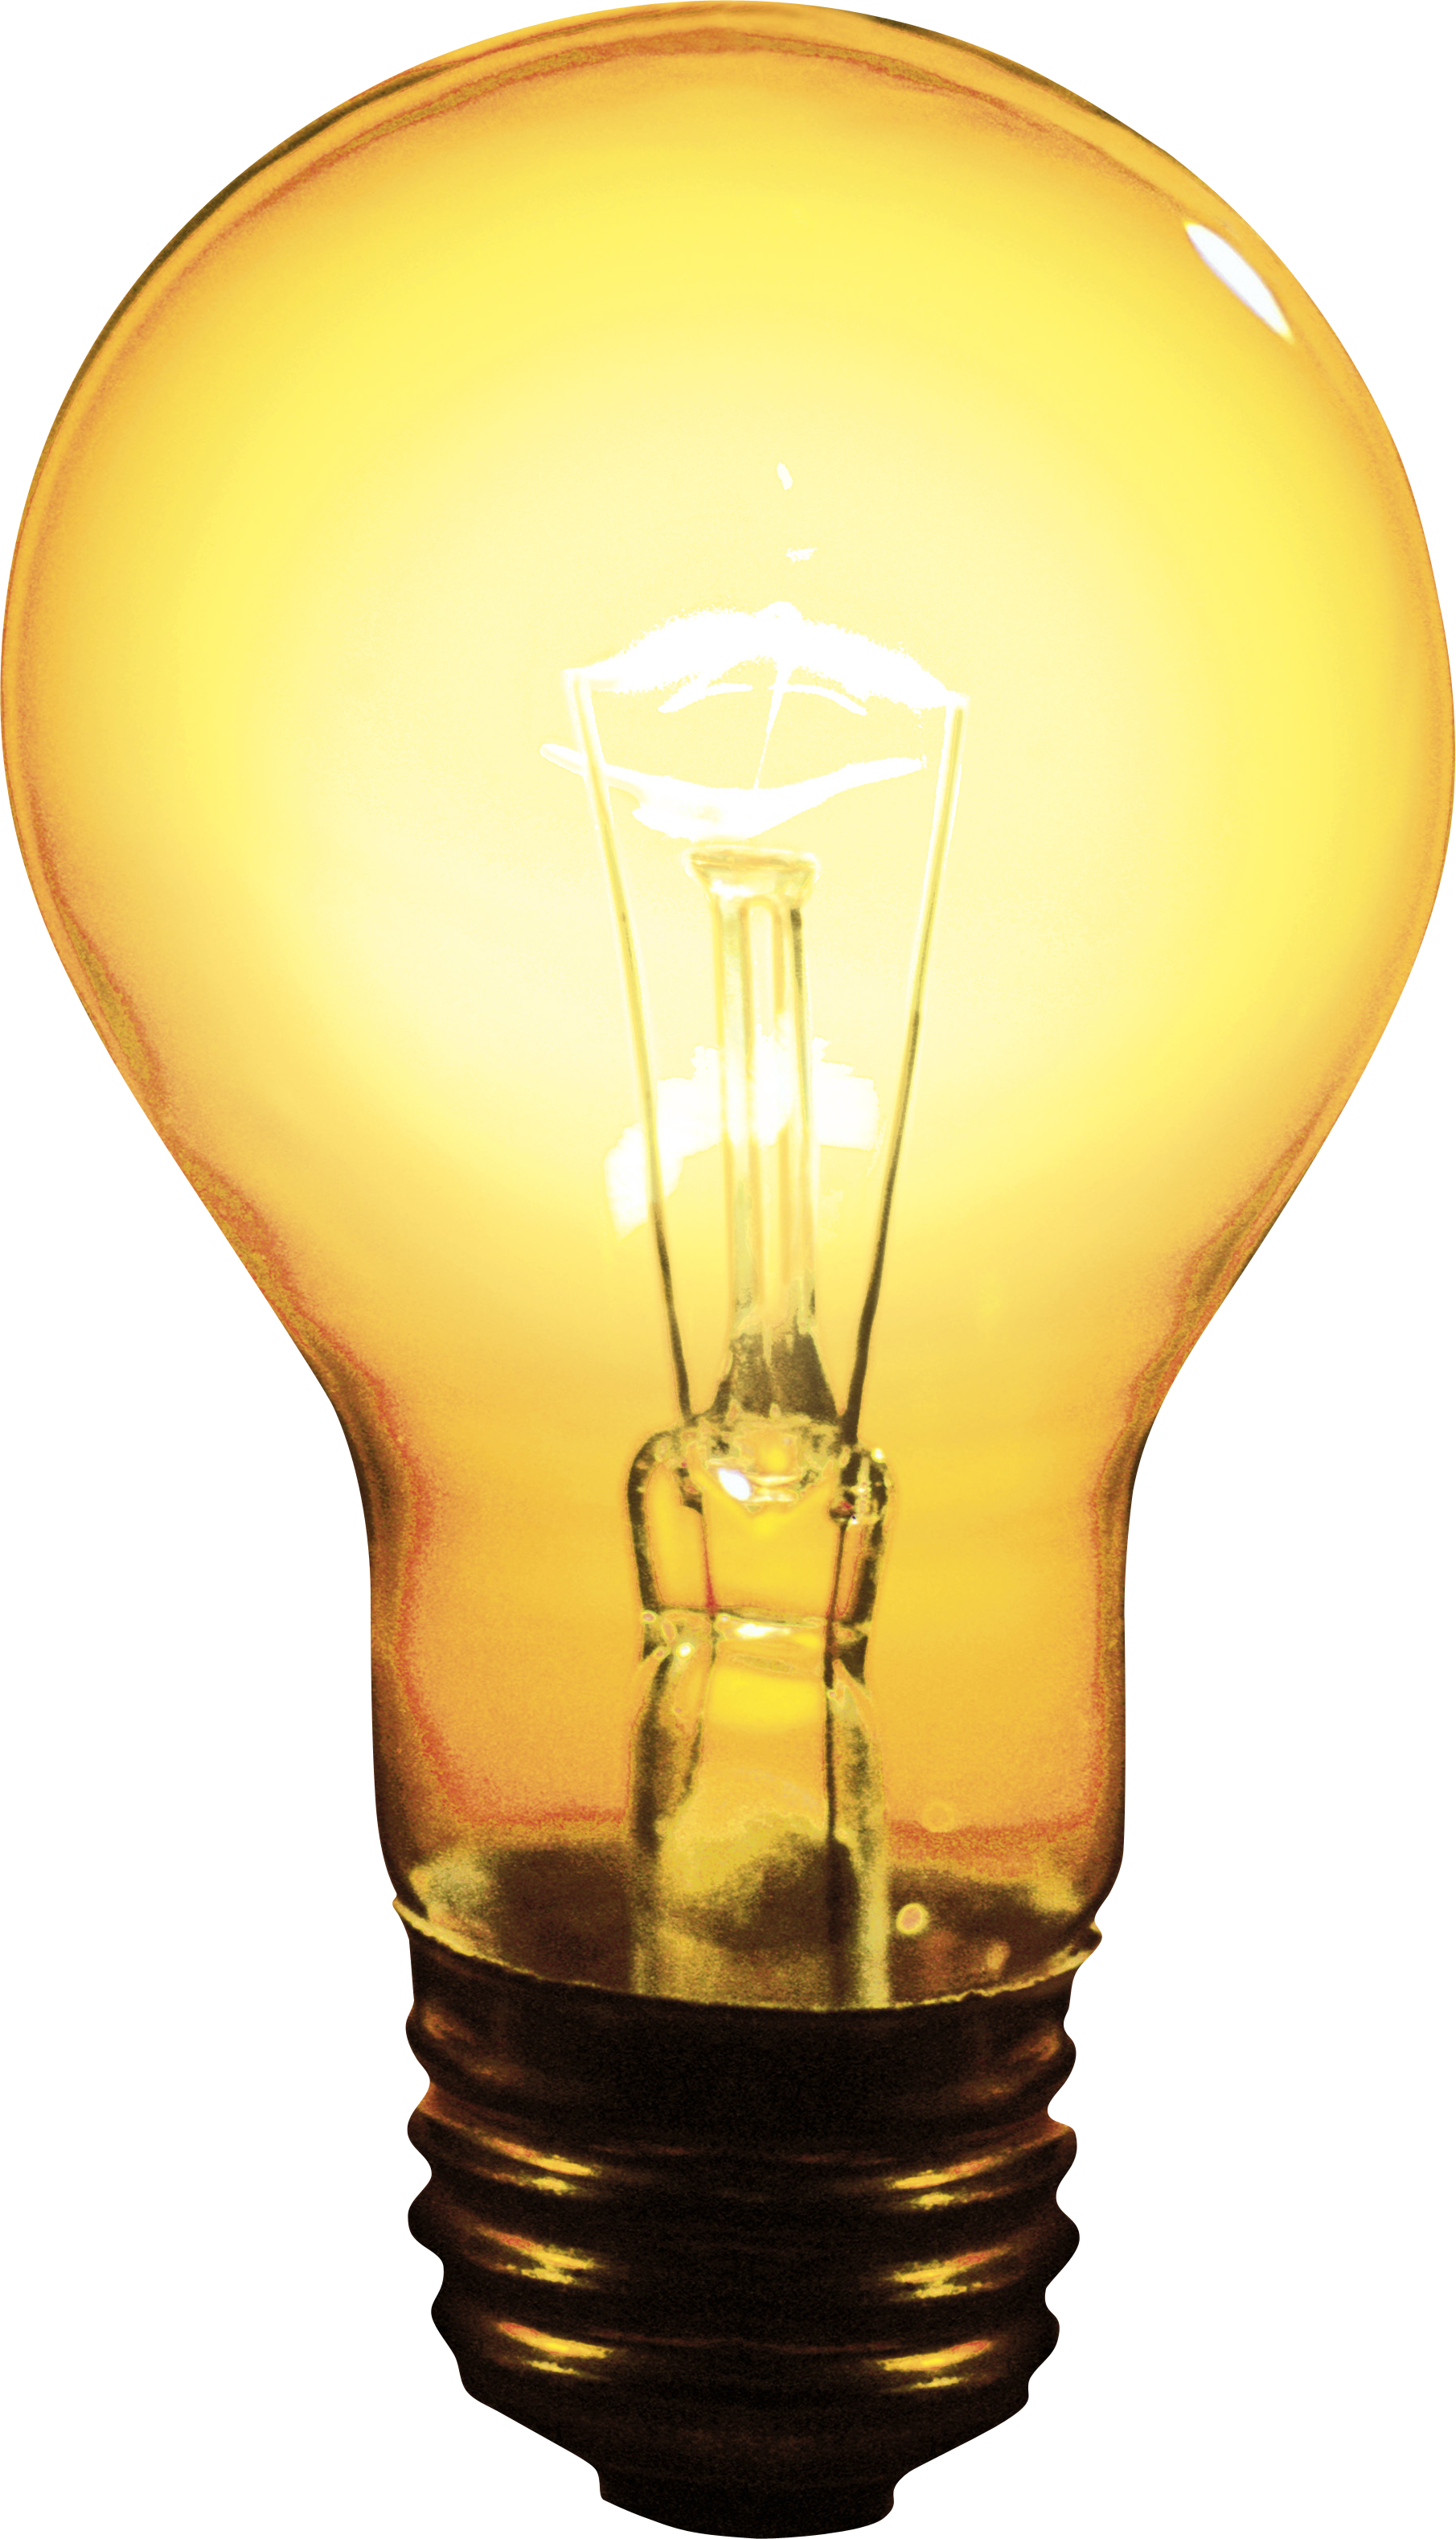 Lampe Télécharger limage PNG Transparente